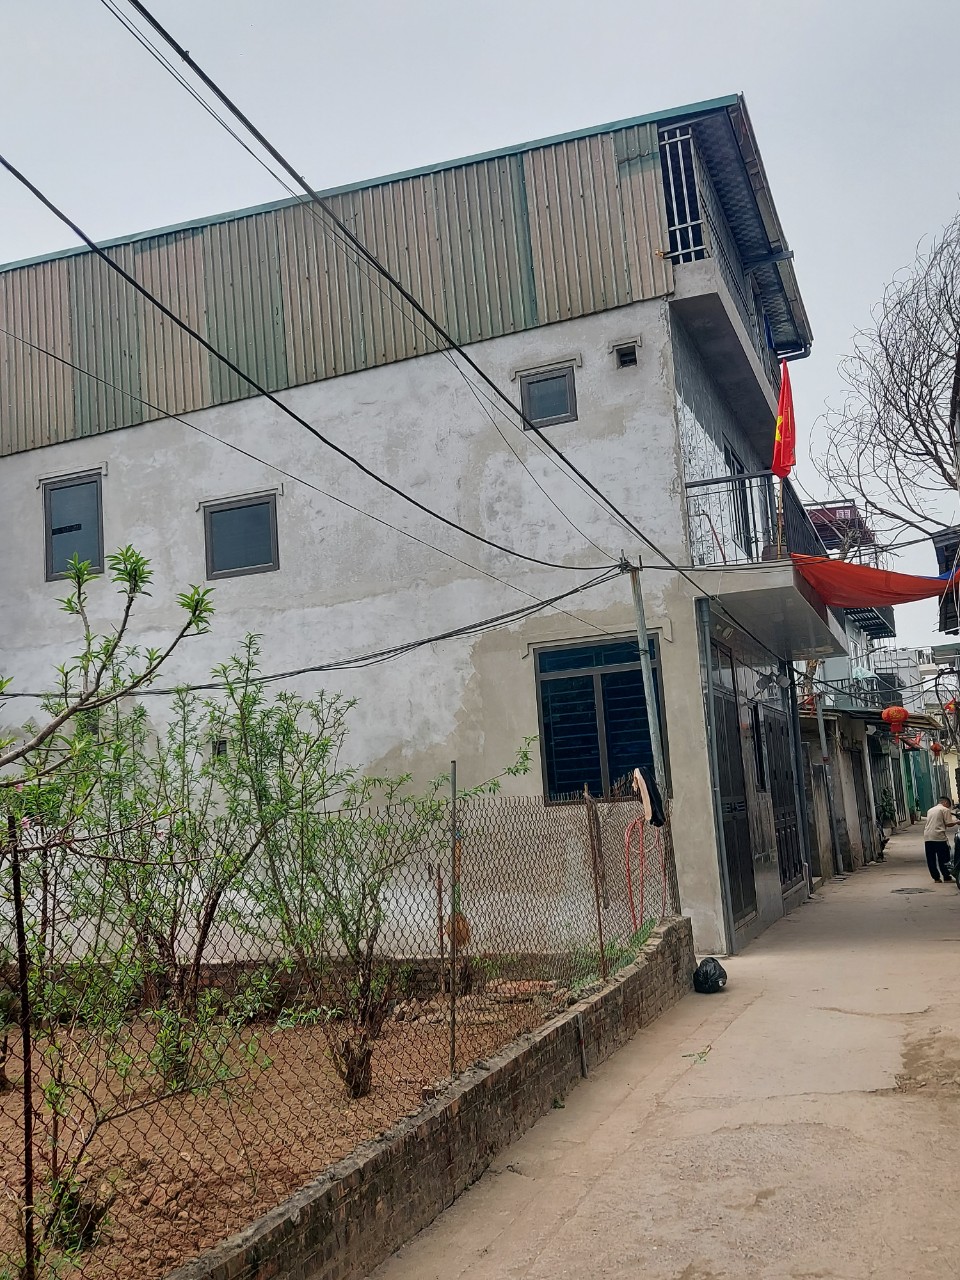 Phường Nhật Tân, quận Tây Hồ (Hà Nội): Hàng loạt các công trình xây dựng trên đất nông nghiệp